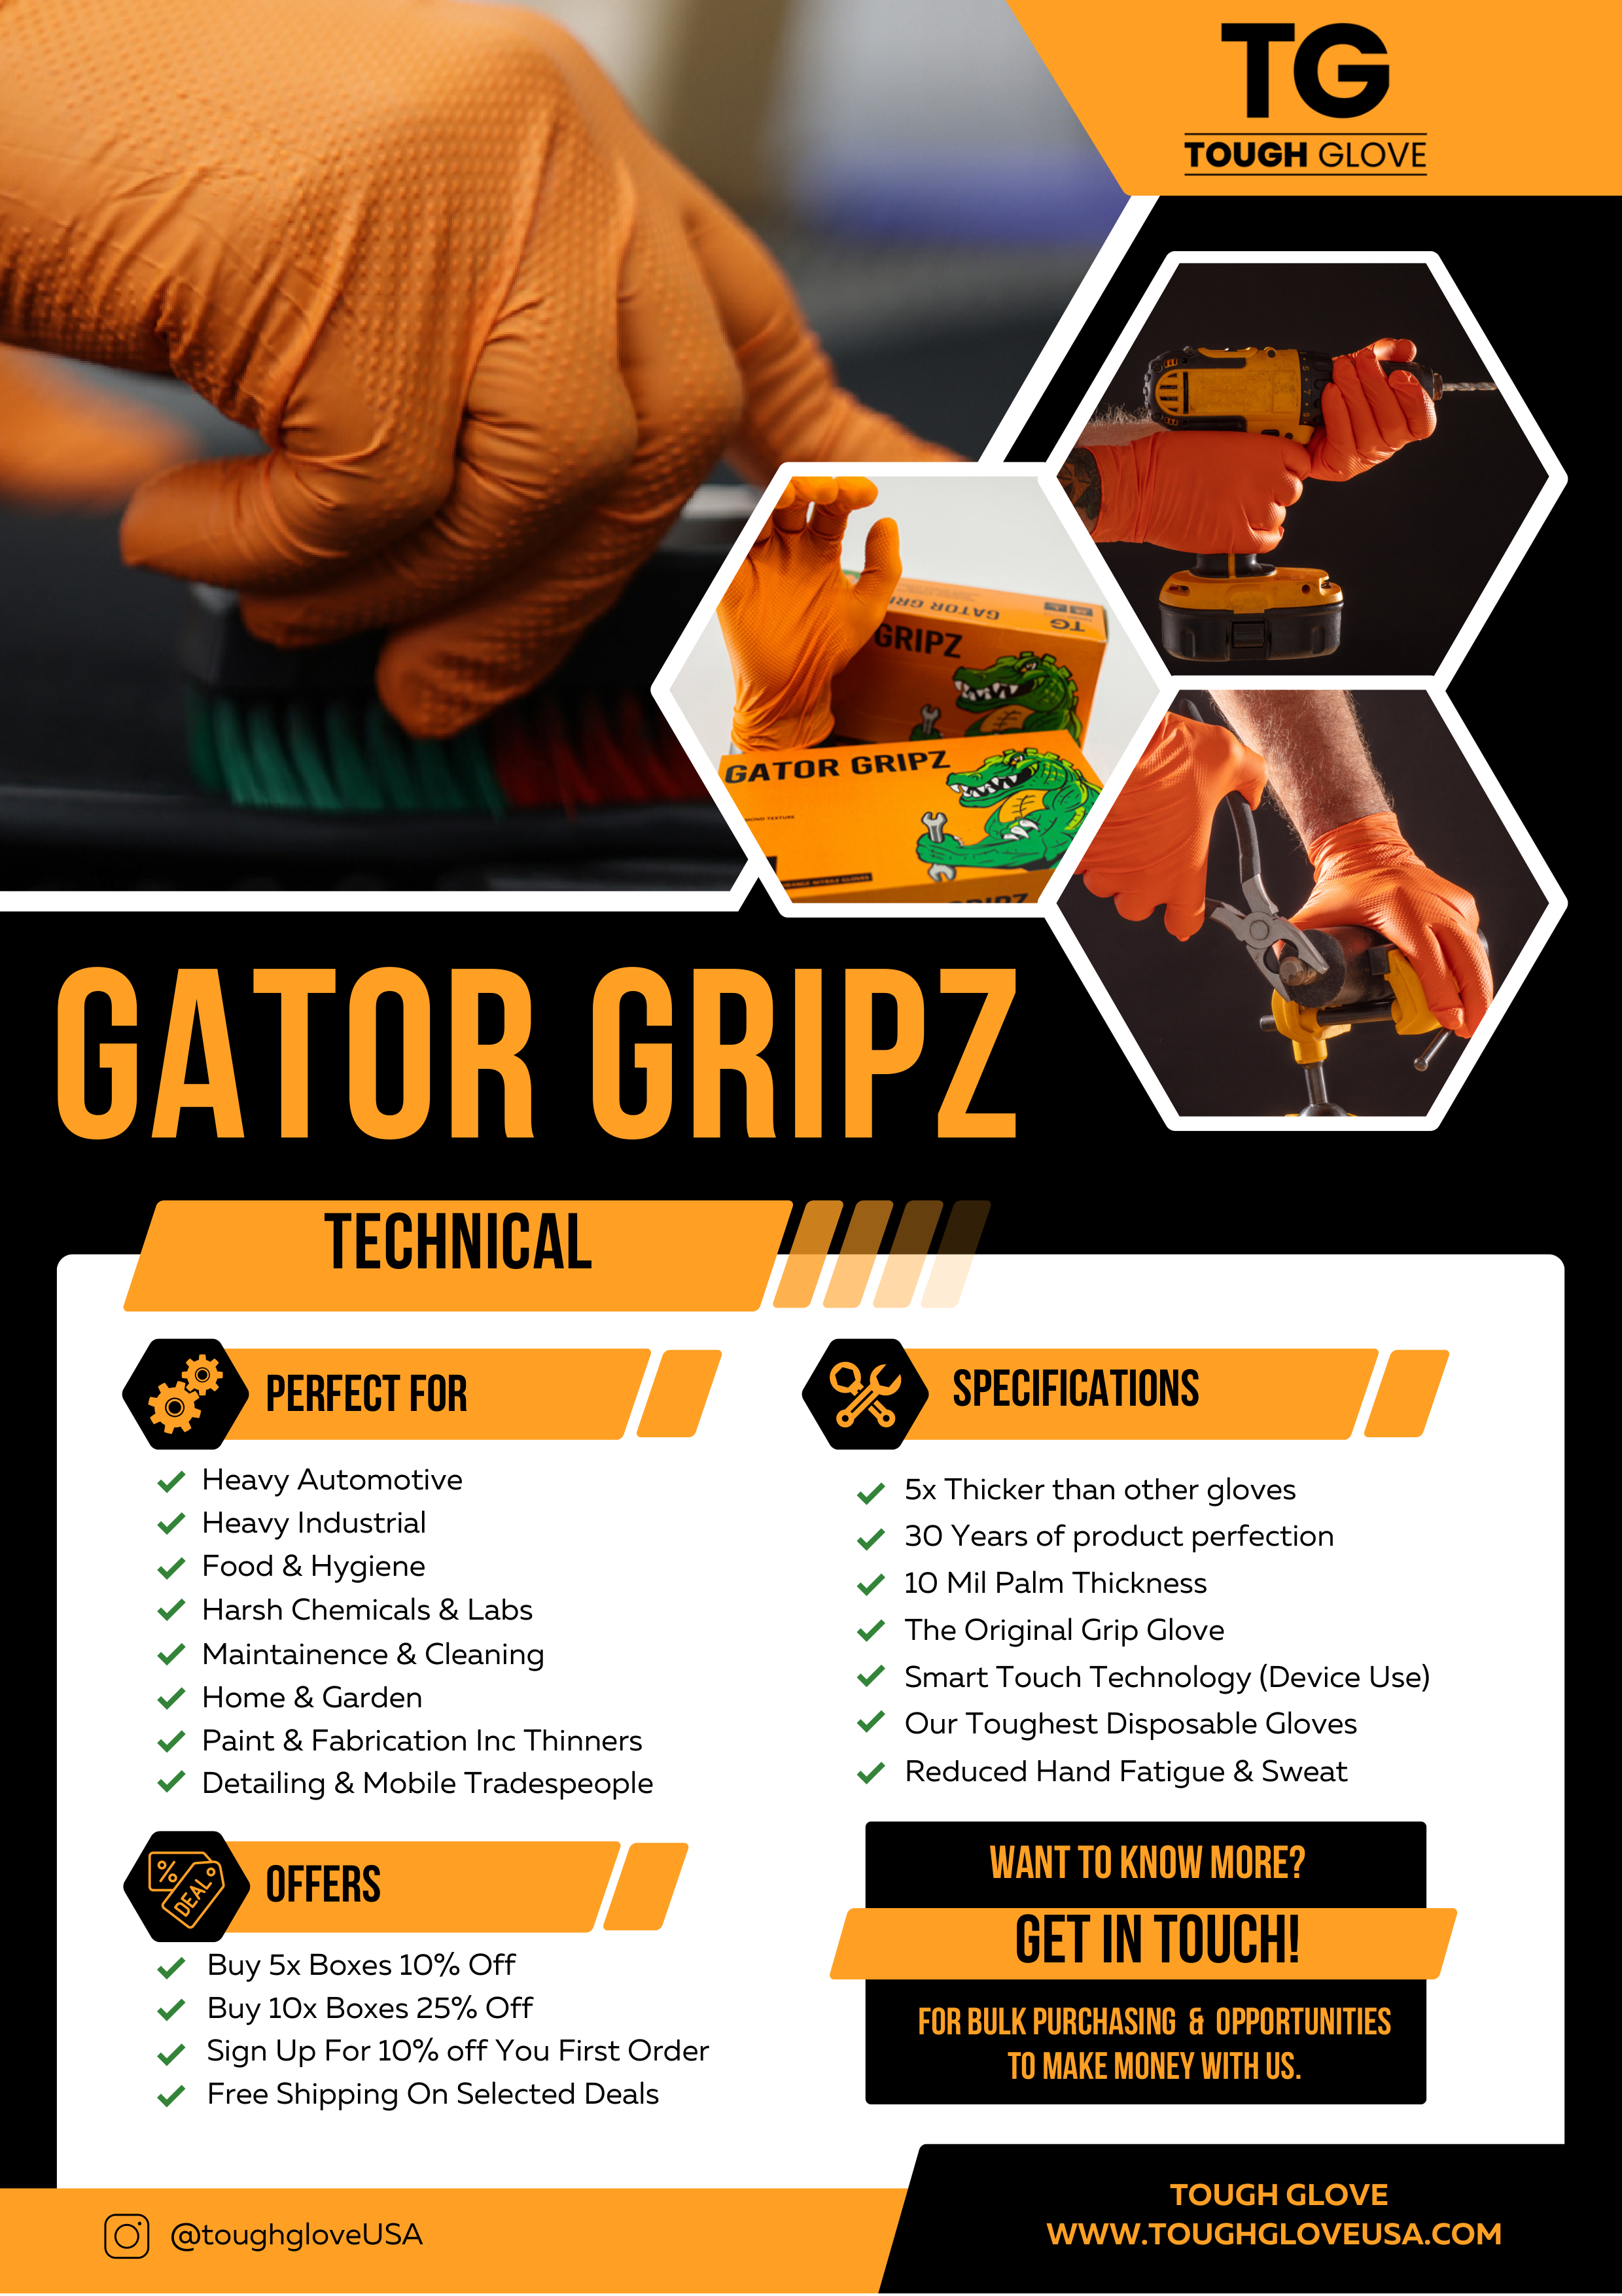 FroGrip Z-Grip 4920HG Hi-Vis Green A4 Cut Nitrile Coated Gloves - S